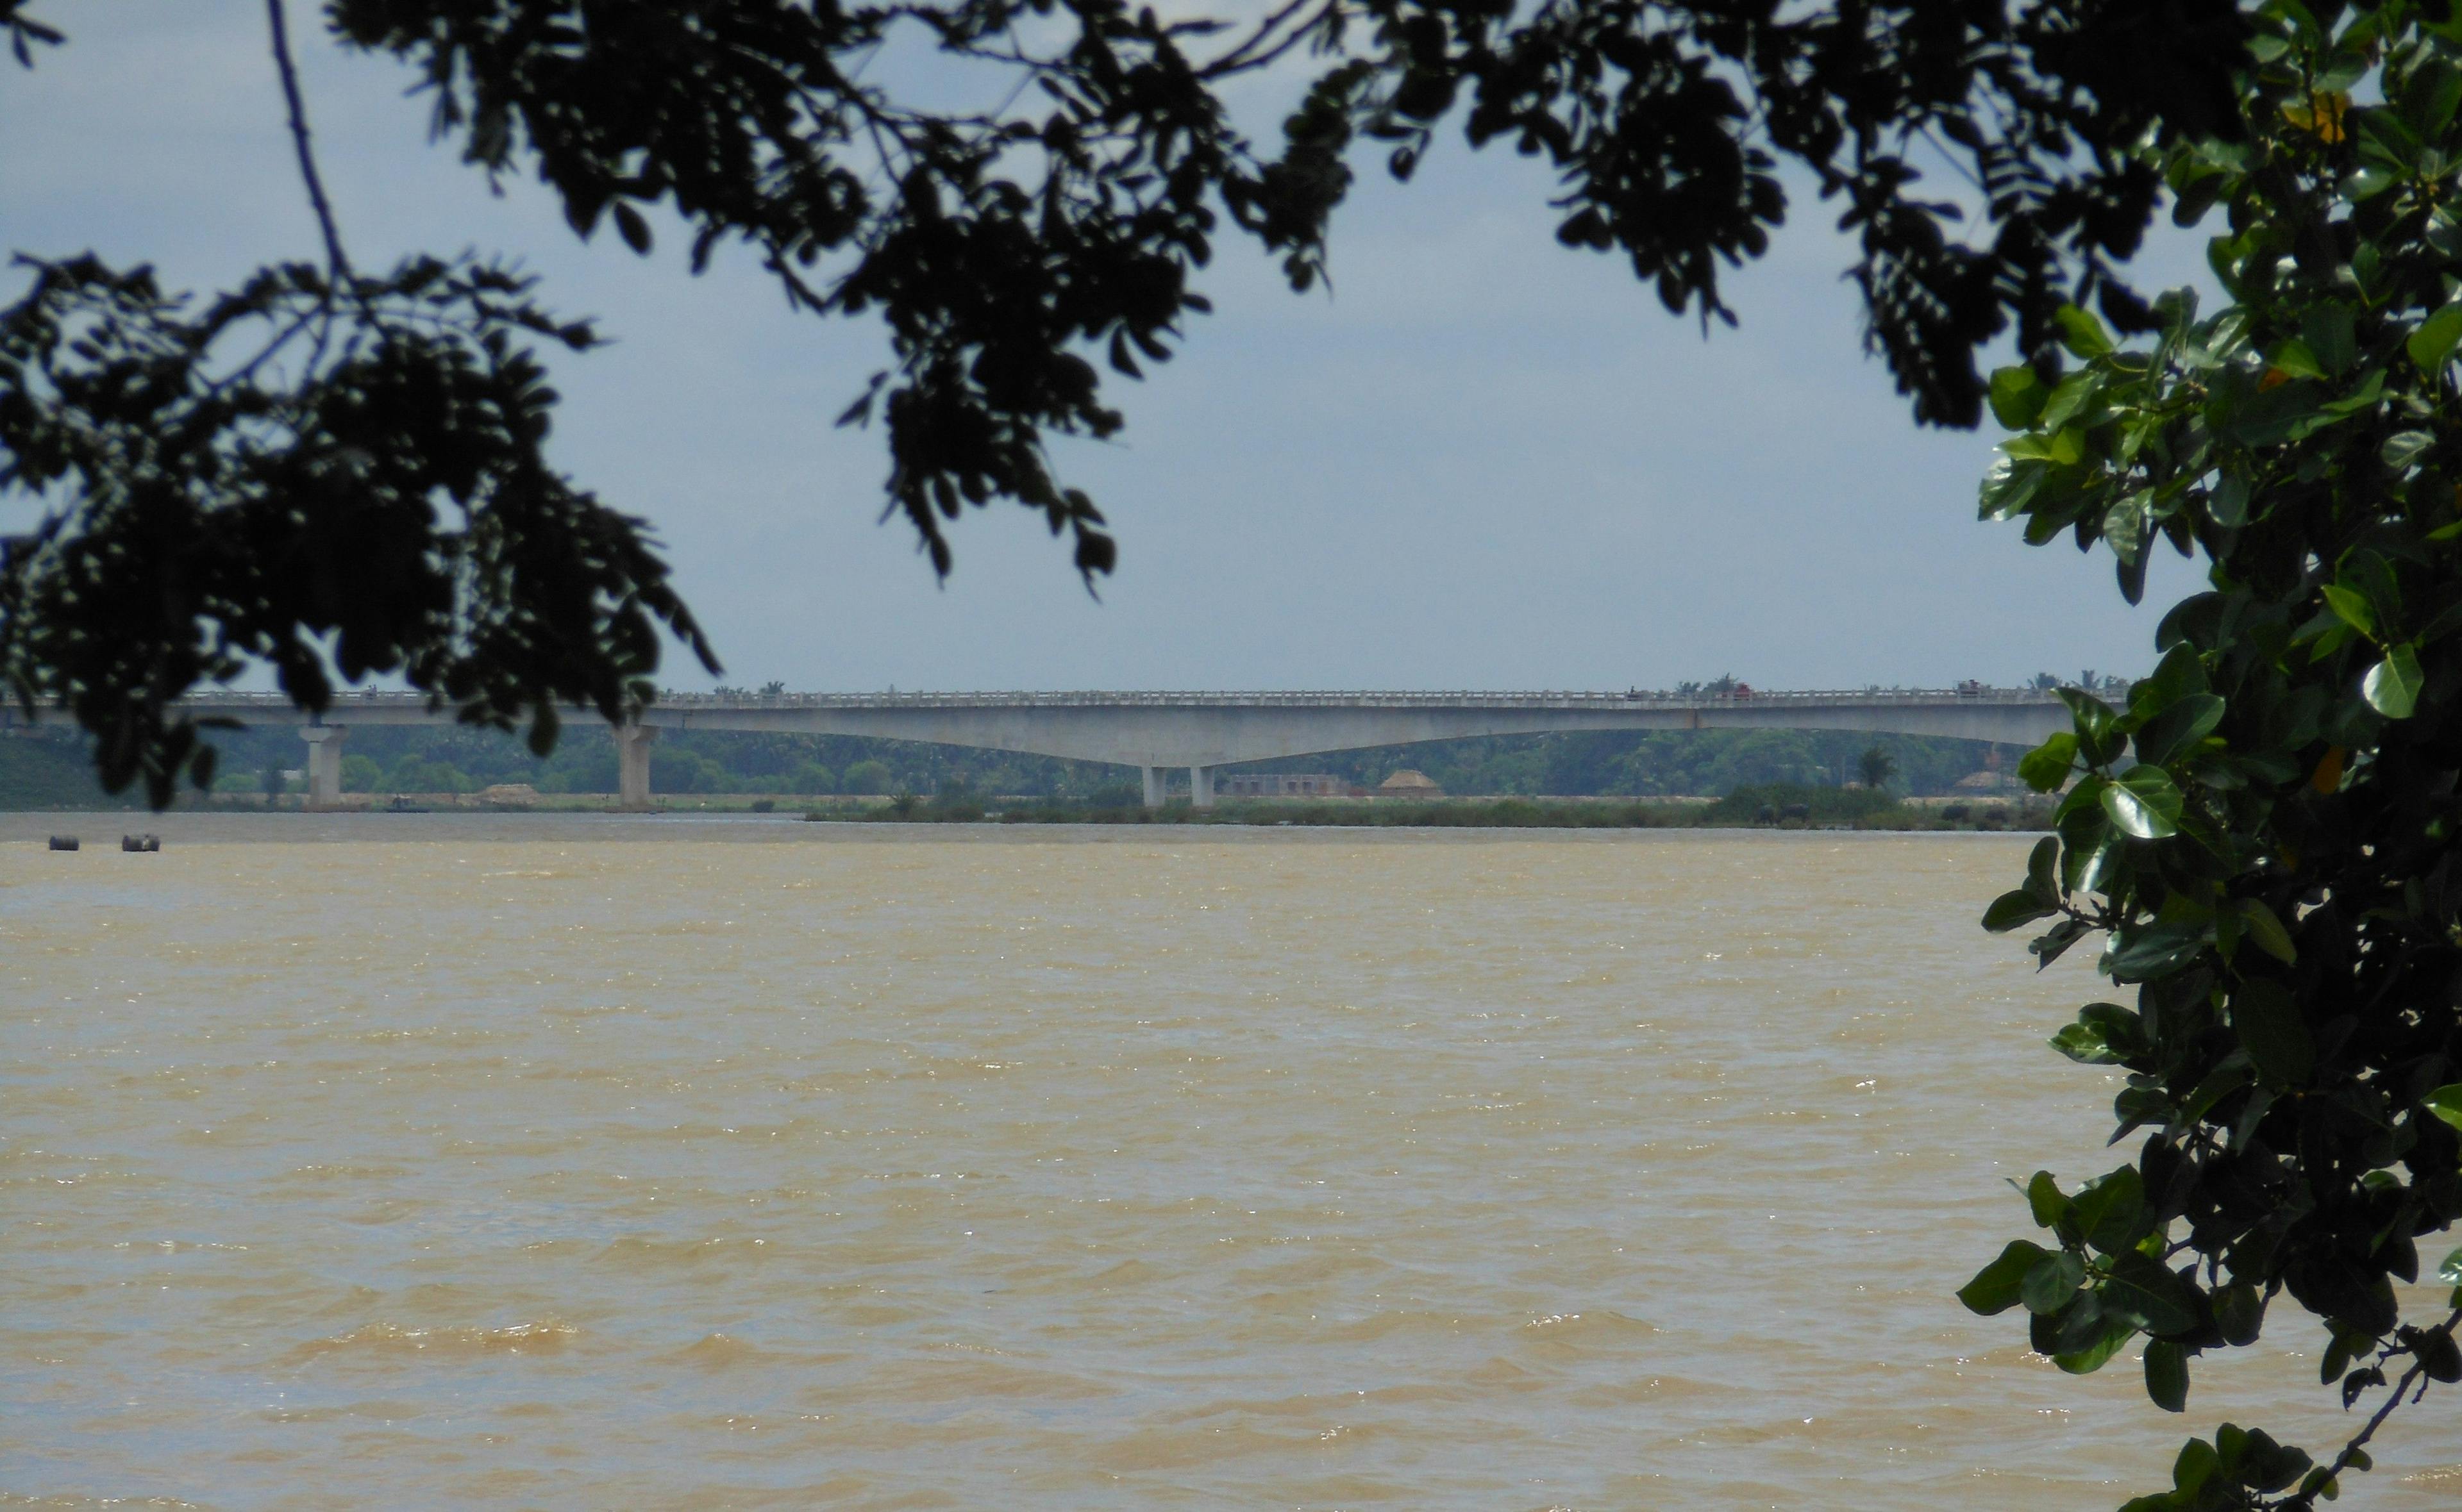 The Baitarani River in Odisha